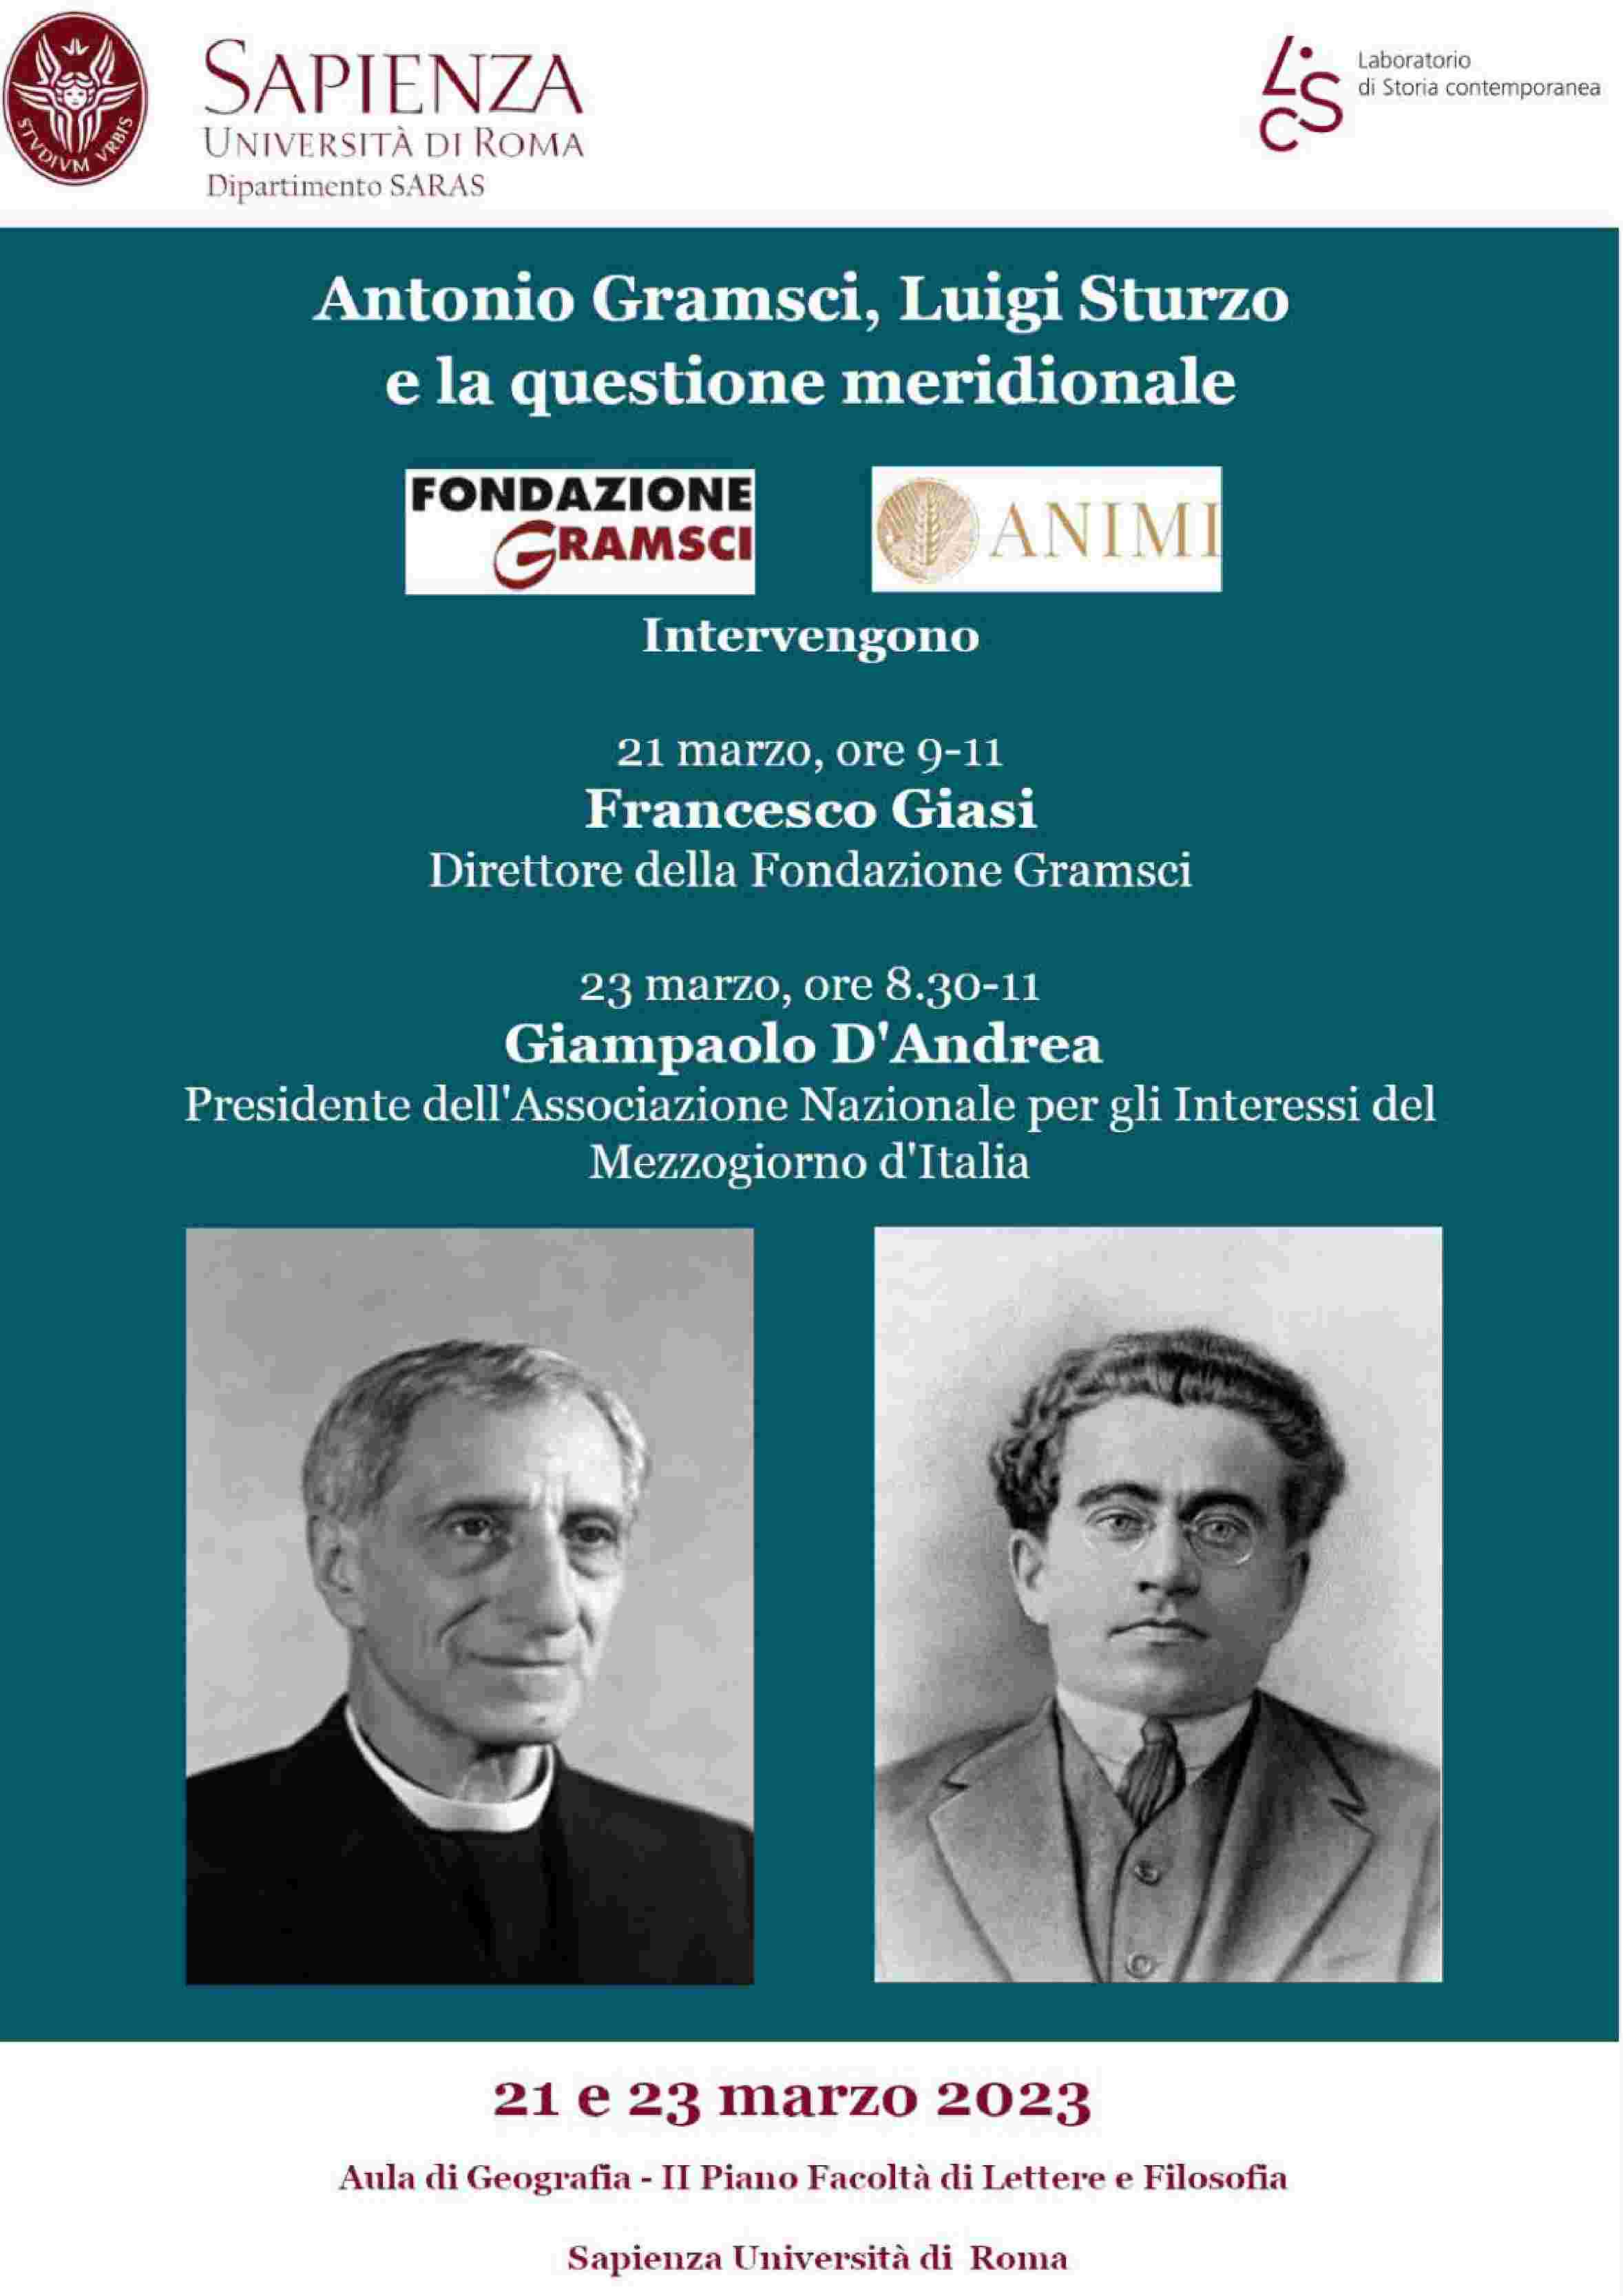 Antonio Gramsci, Luigi Sturzo e la Questione meridionale